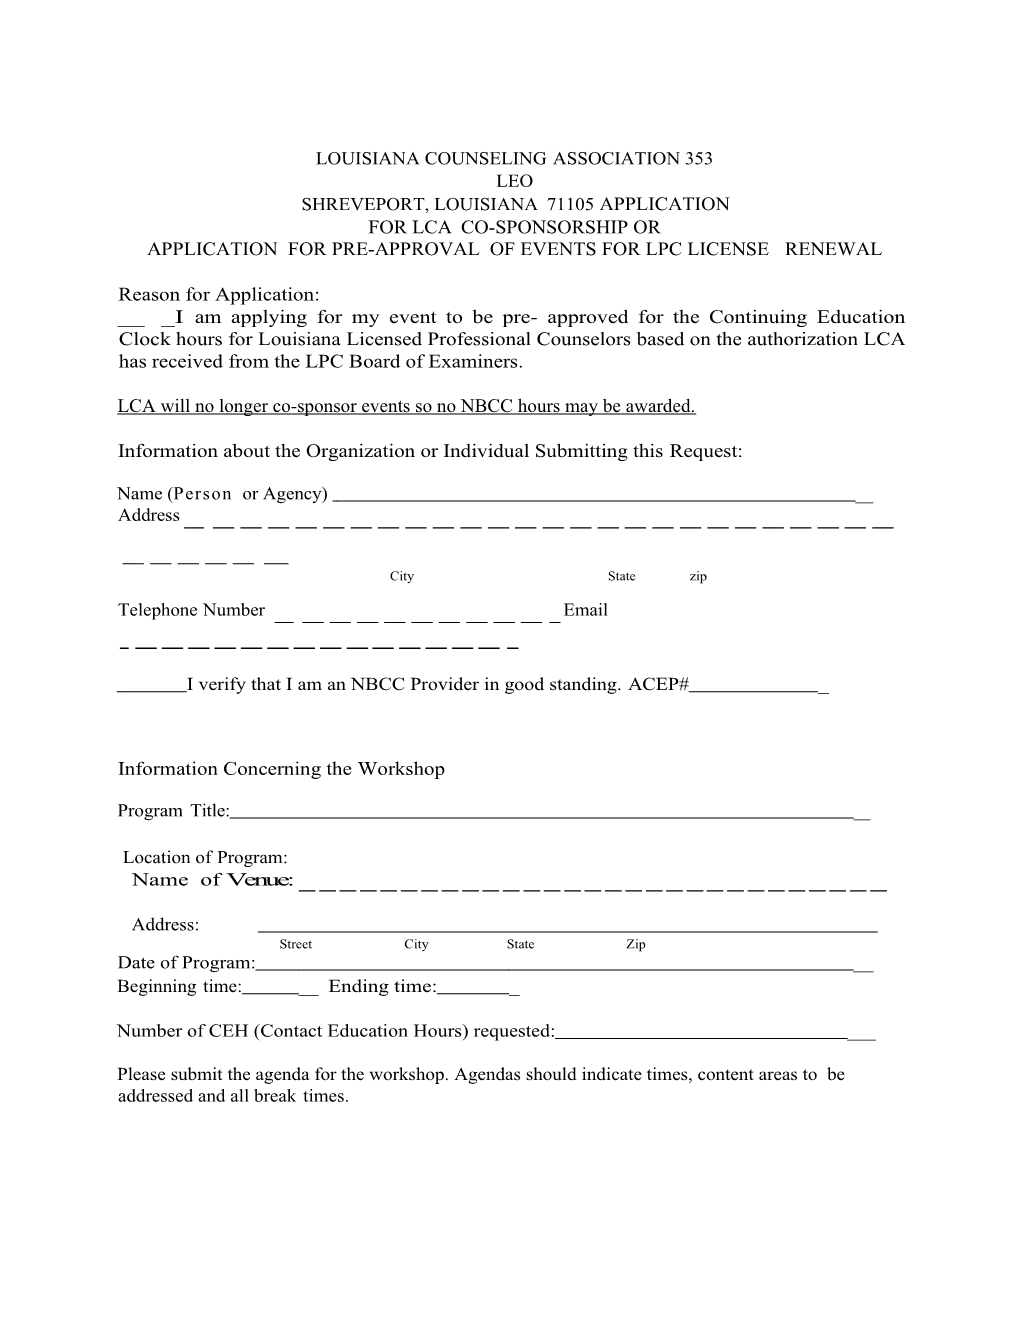 Shreveport, Louisiana71105 Application for Lcaco-Sponsorship Or